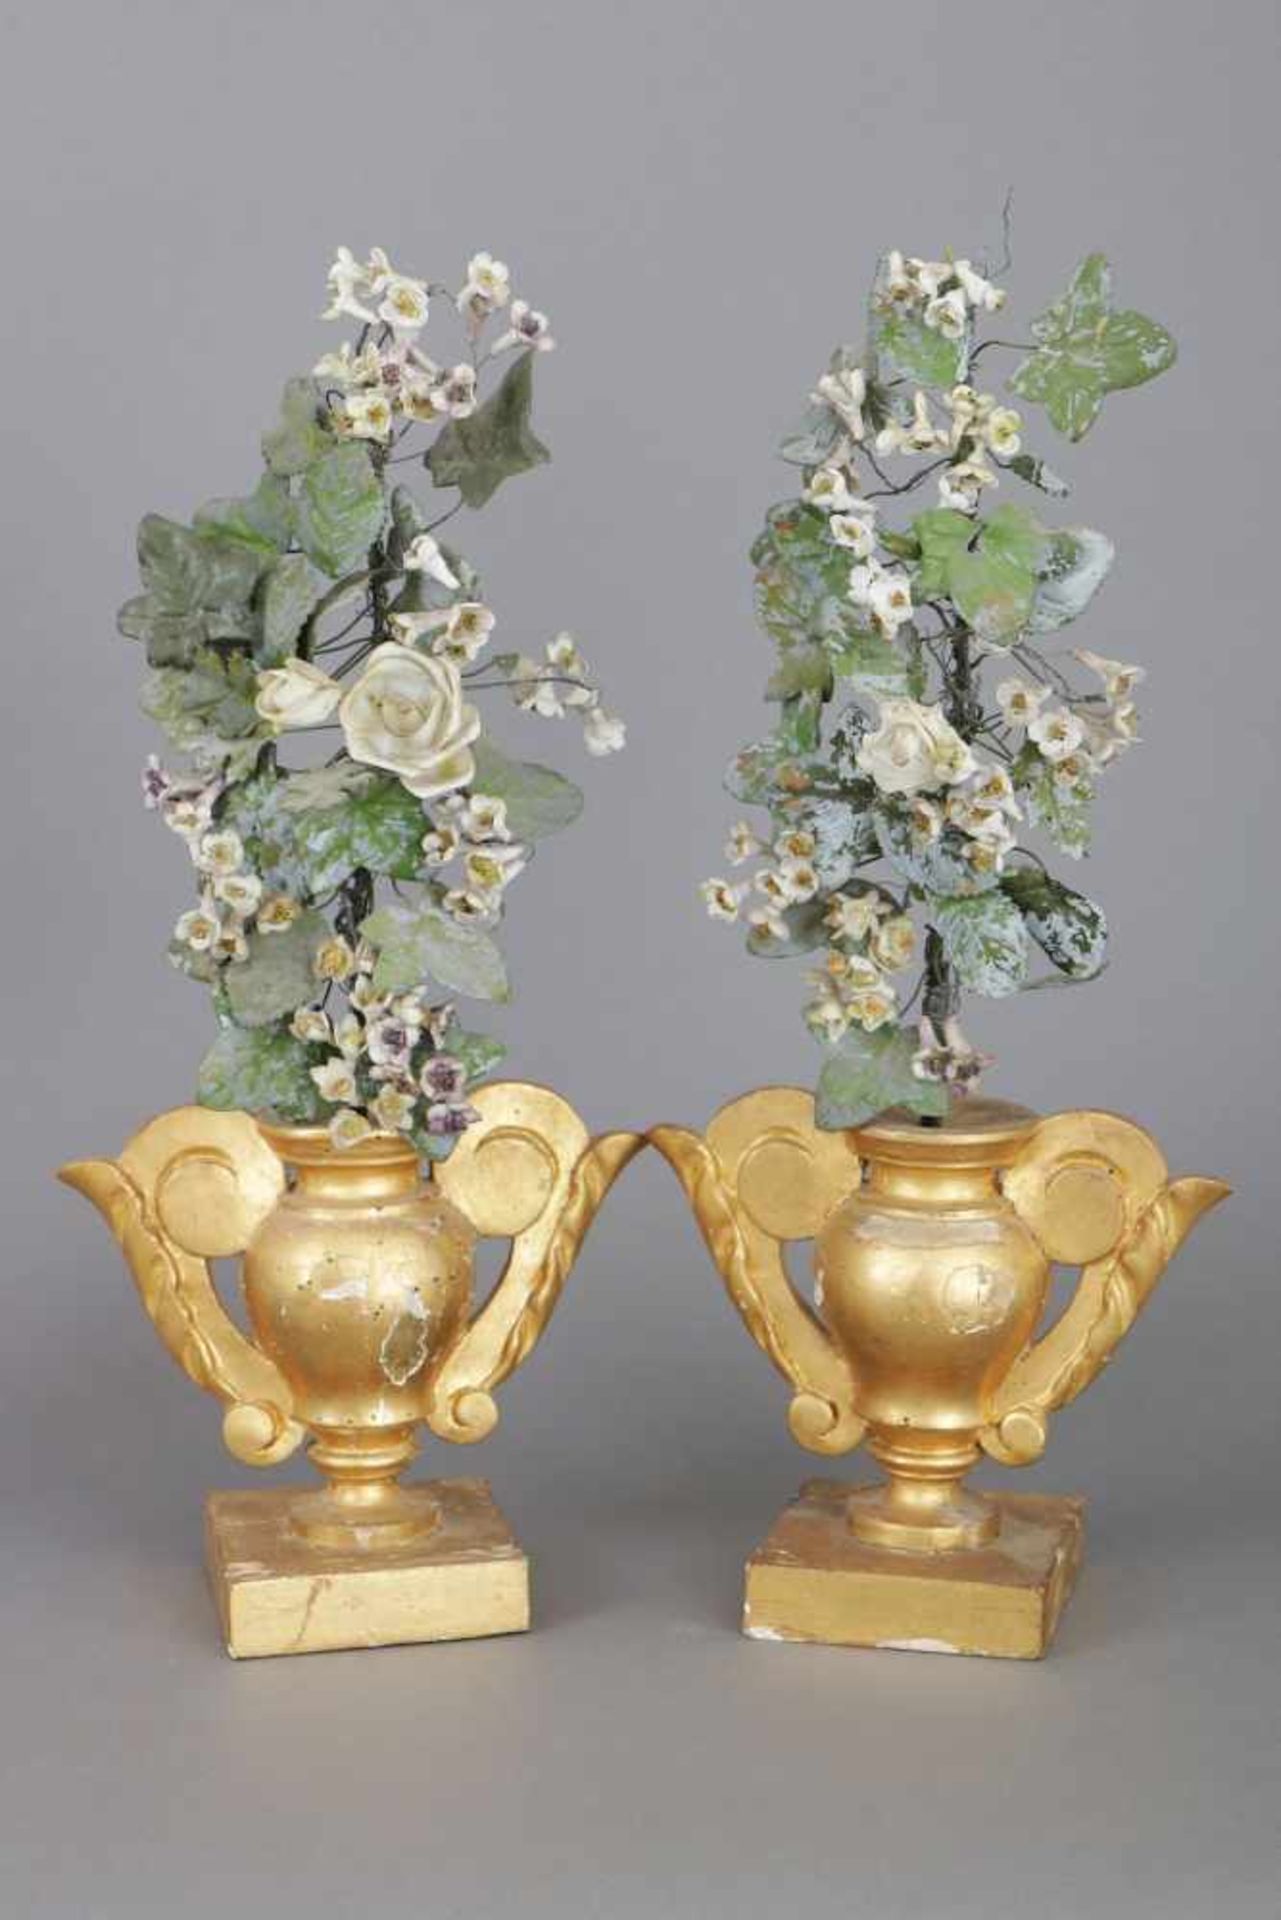 Paar BeistellerHolz, Blech und Bisquitporzellan, Deutsch, um 1800, Blüten- und Blättergewächs in